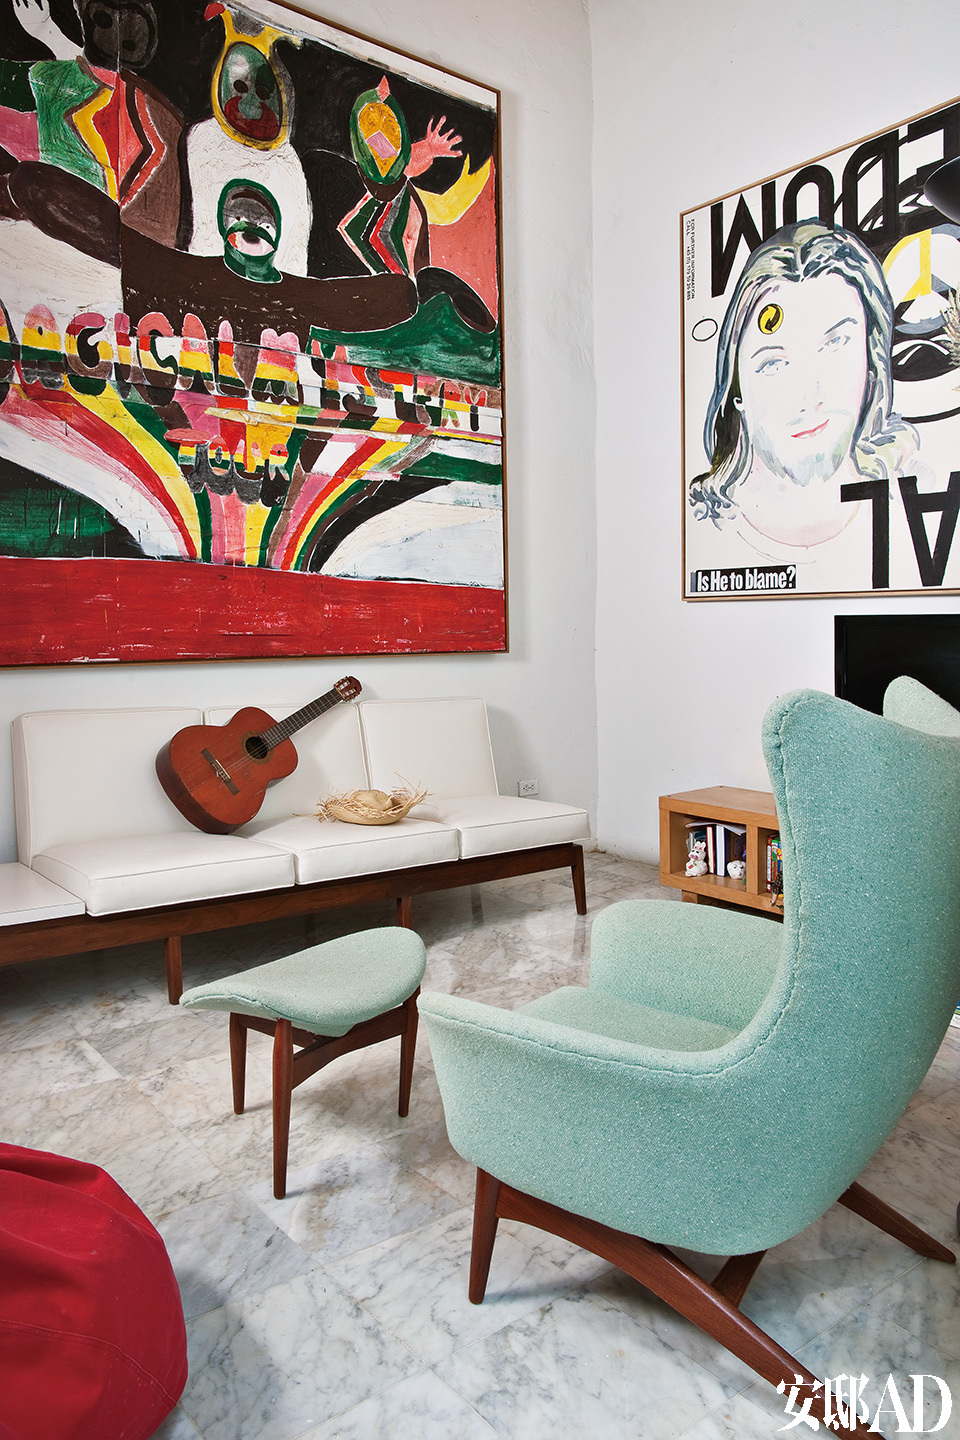 起居室内的组合家具是电影《The RumDiary》的拍摄道具，这部电影由Johnny Depp主演，取景就在波多黎各。房子女主人Mima在一个特别卖场上淘回了这套组合家具。